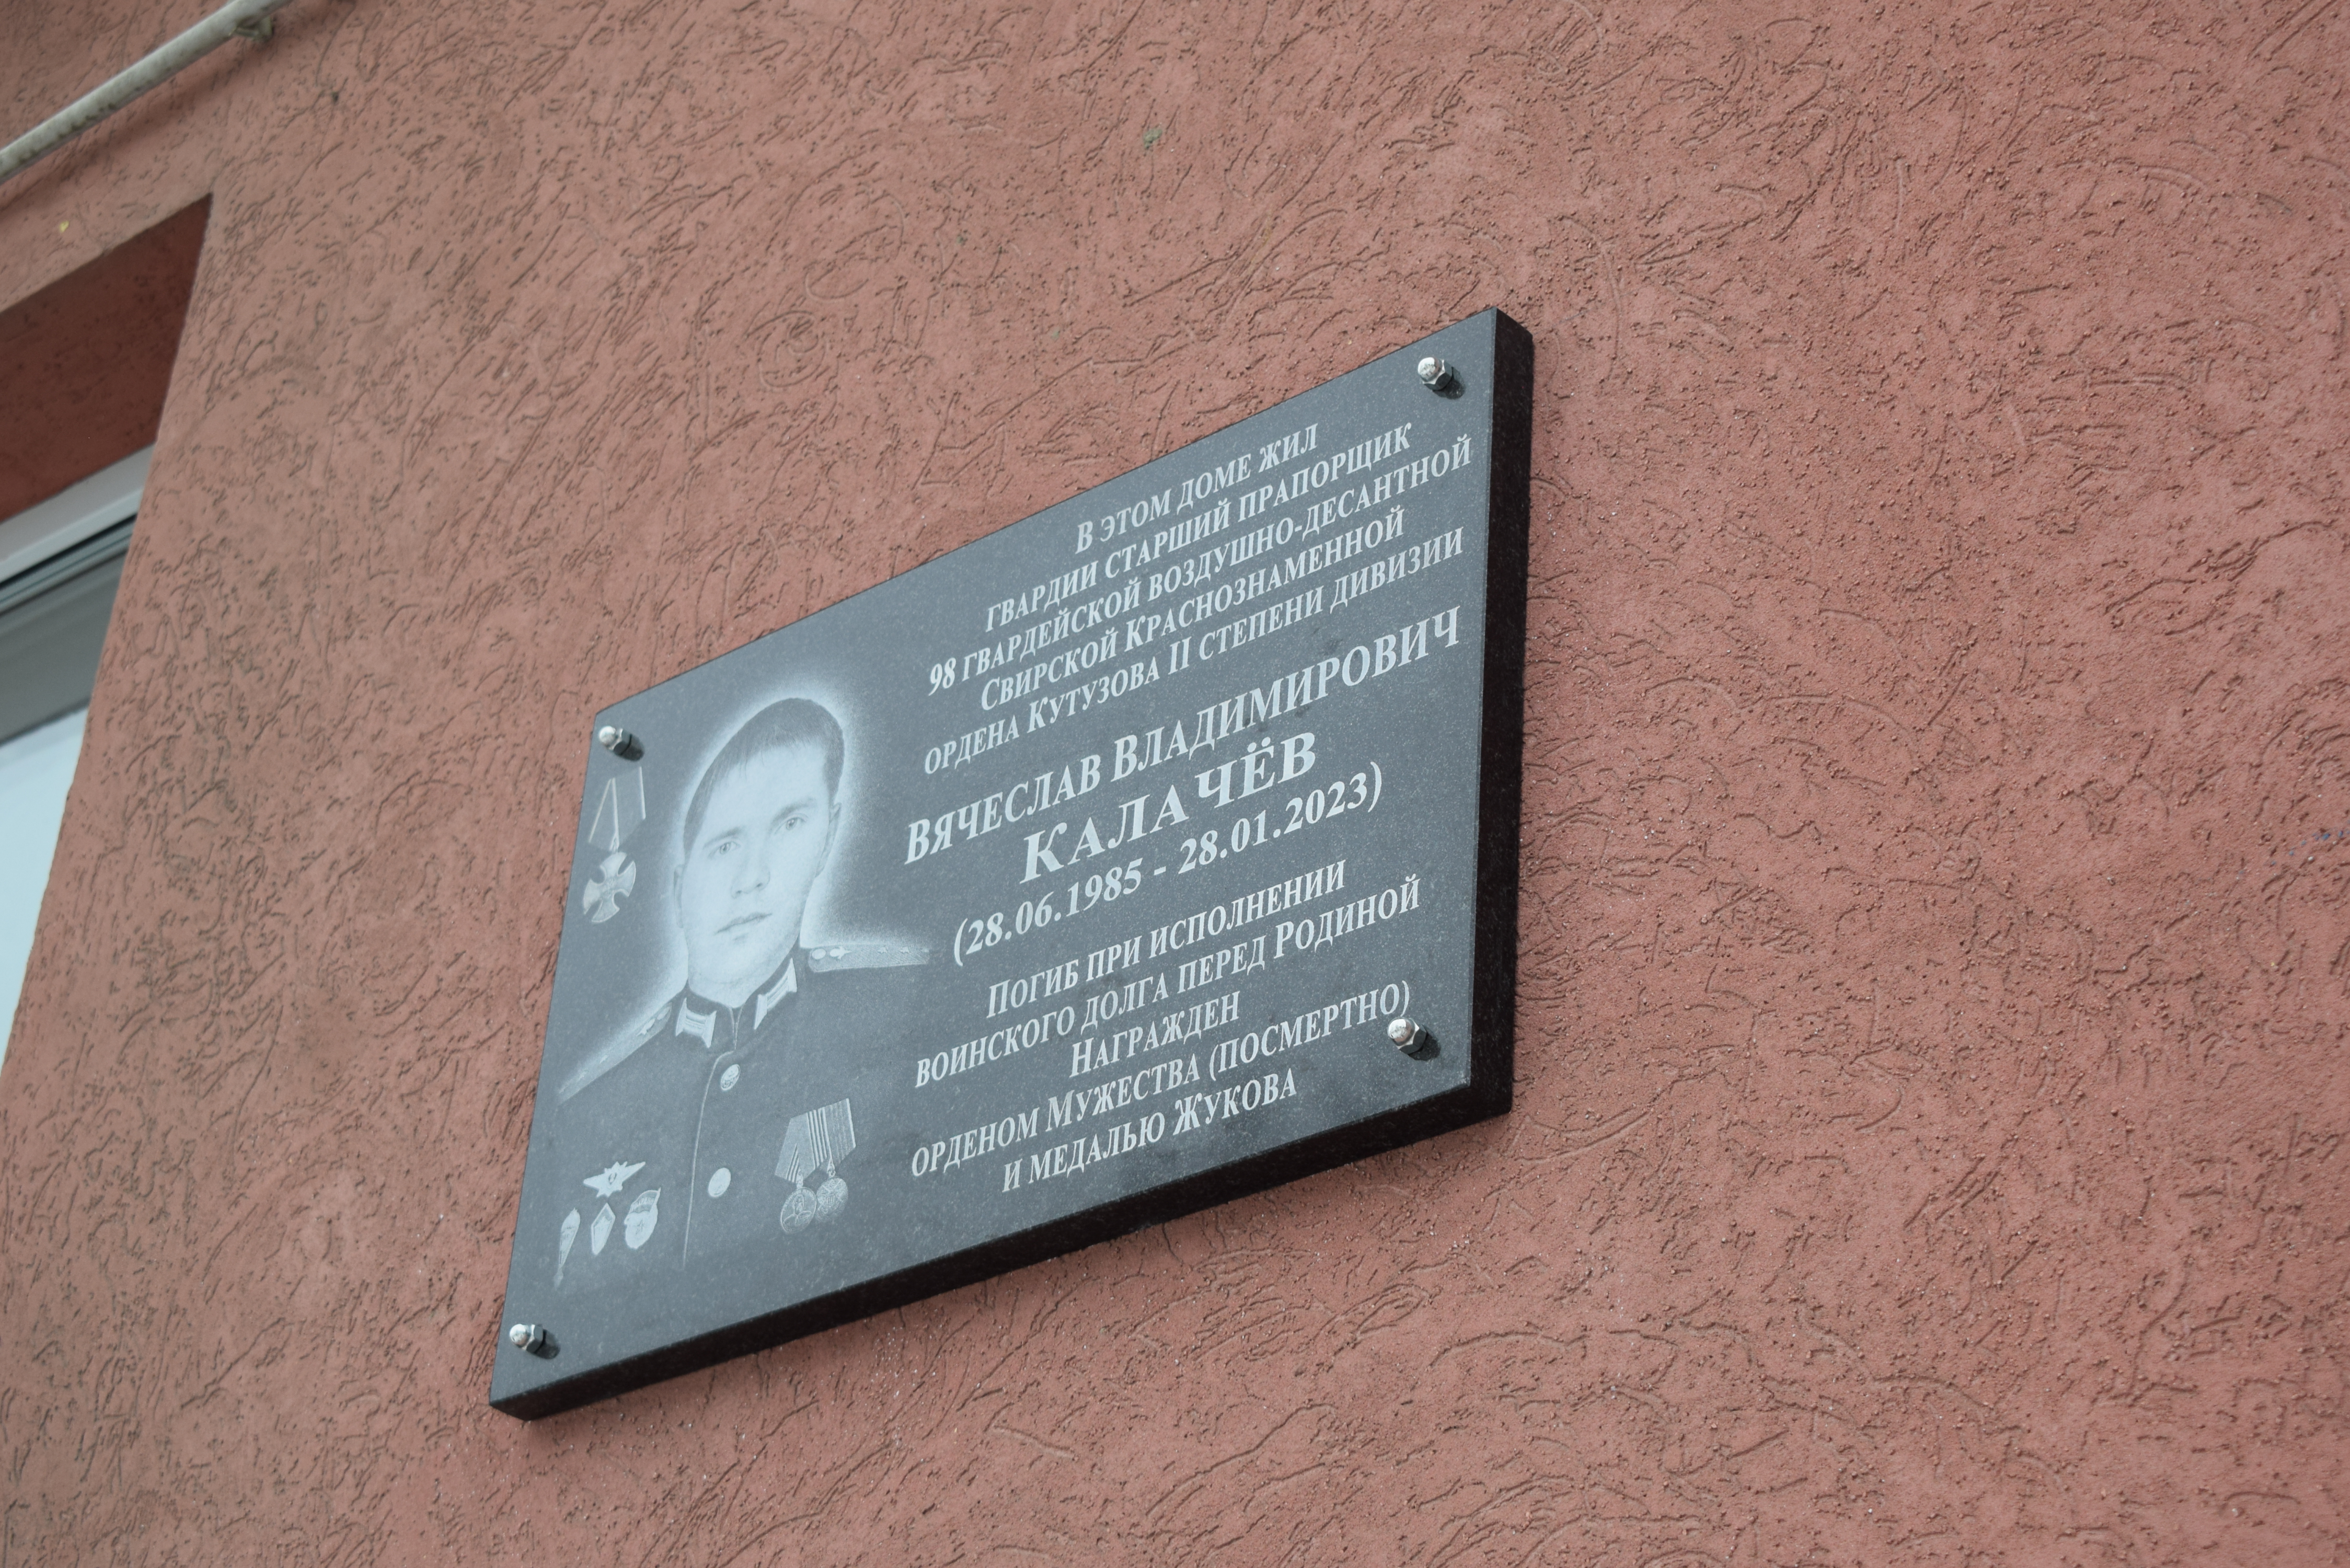 В Иванове открыли мемориальную доску участнику СВО Калачеву Вячеславу Владимировичу.